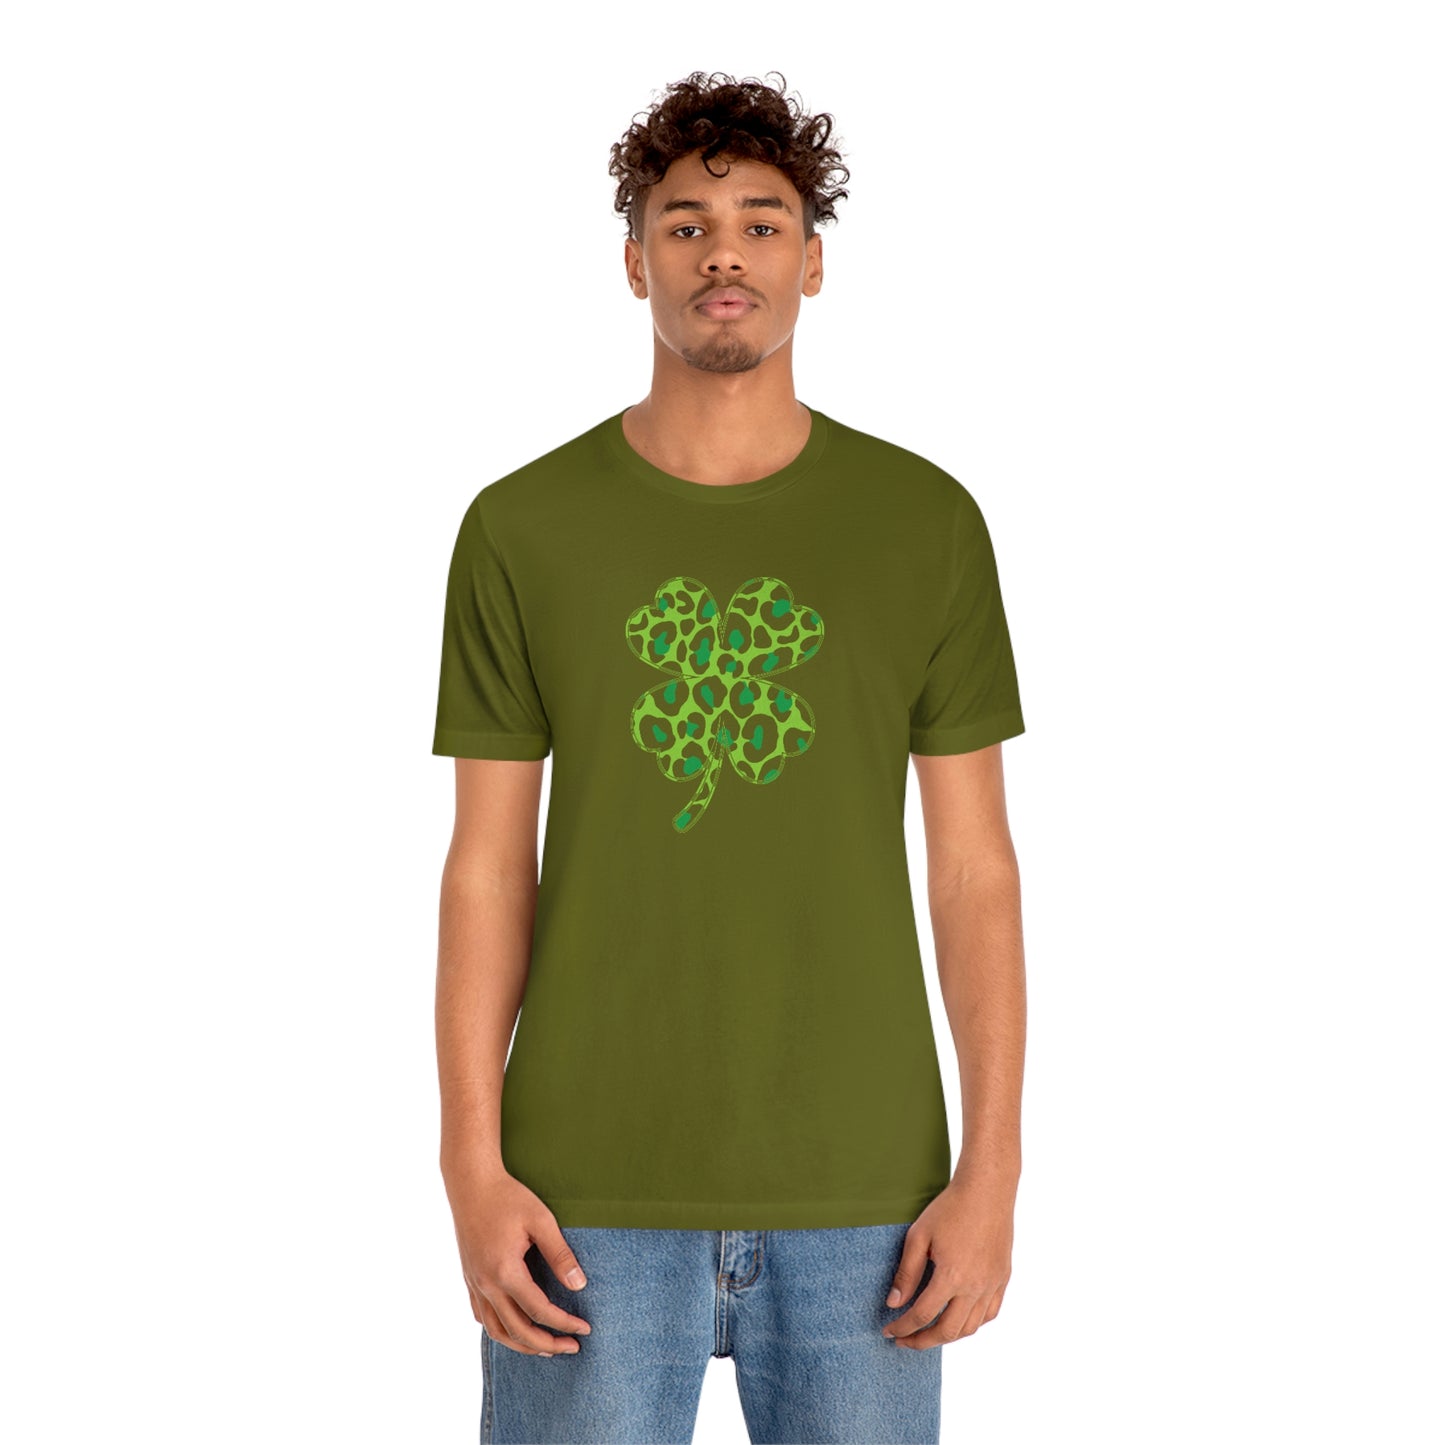 Leopard Shamrock Shirt | Lucky Four Leaf Clover Shirt | Saint Patricks Day Shirt | Unisex Jersey Short Sleeve Tee